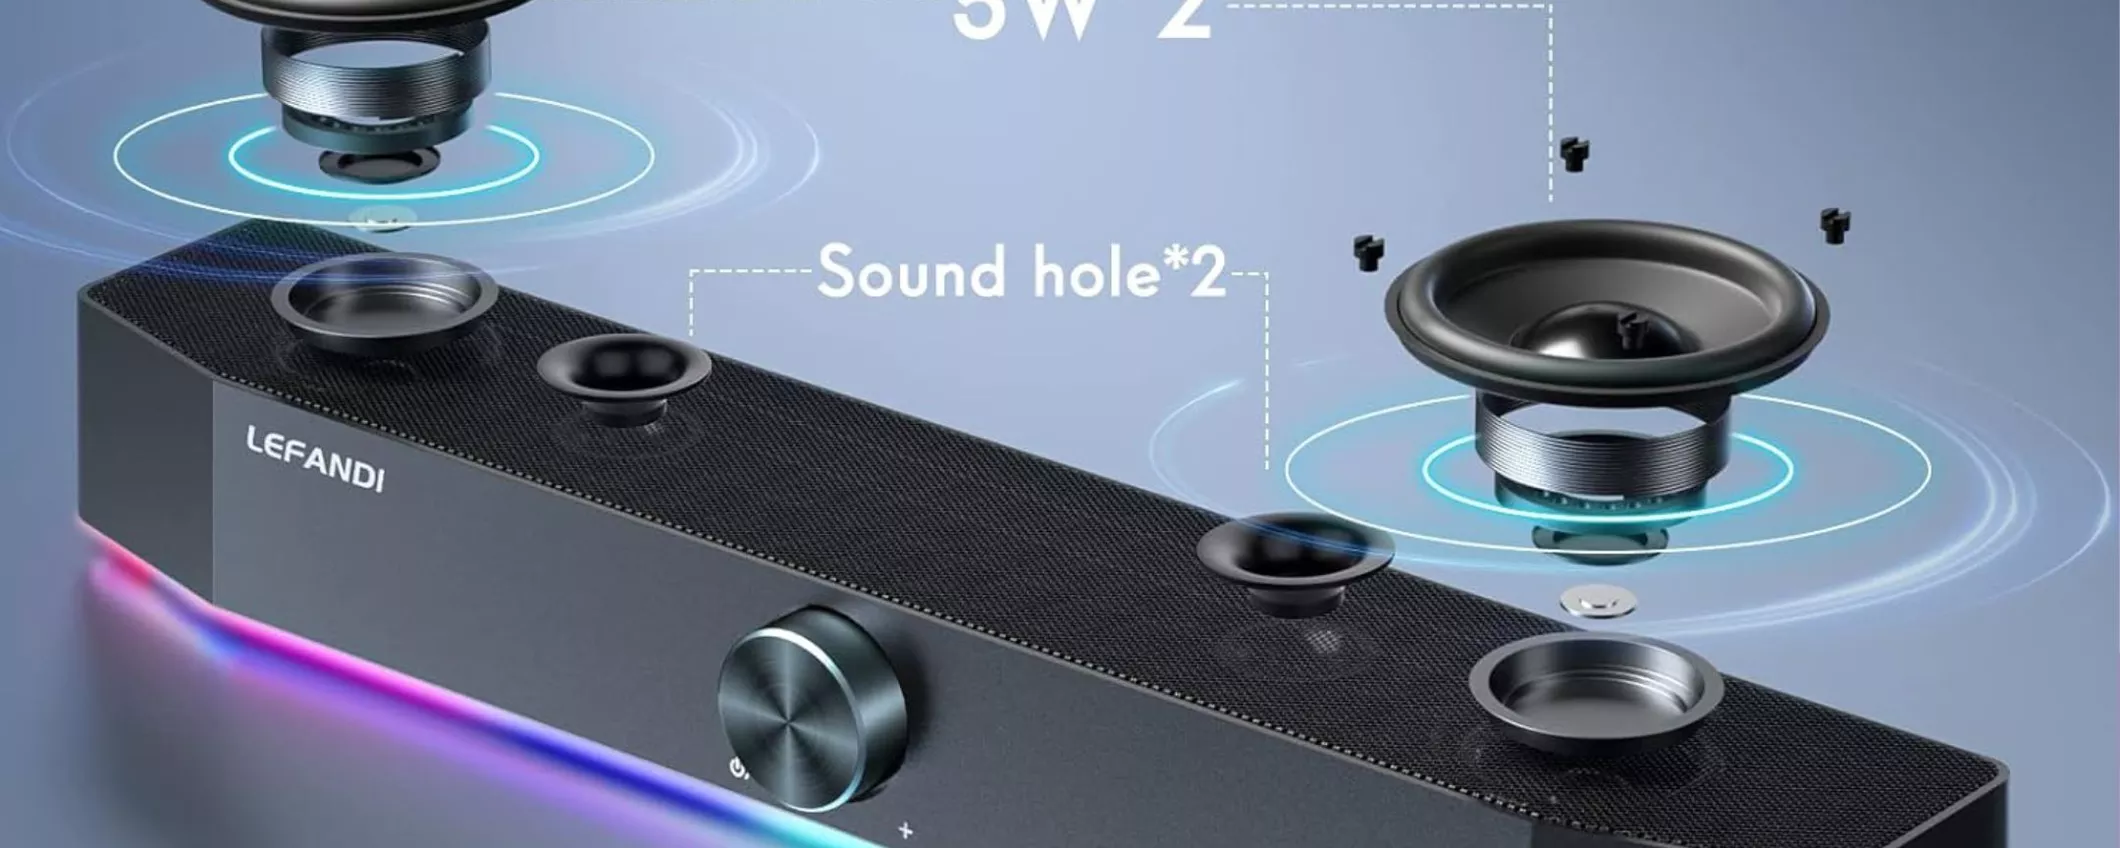 Casse Bluetooth con LED a soli 33€: qualità audio superiore, a meno!